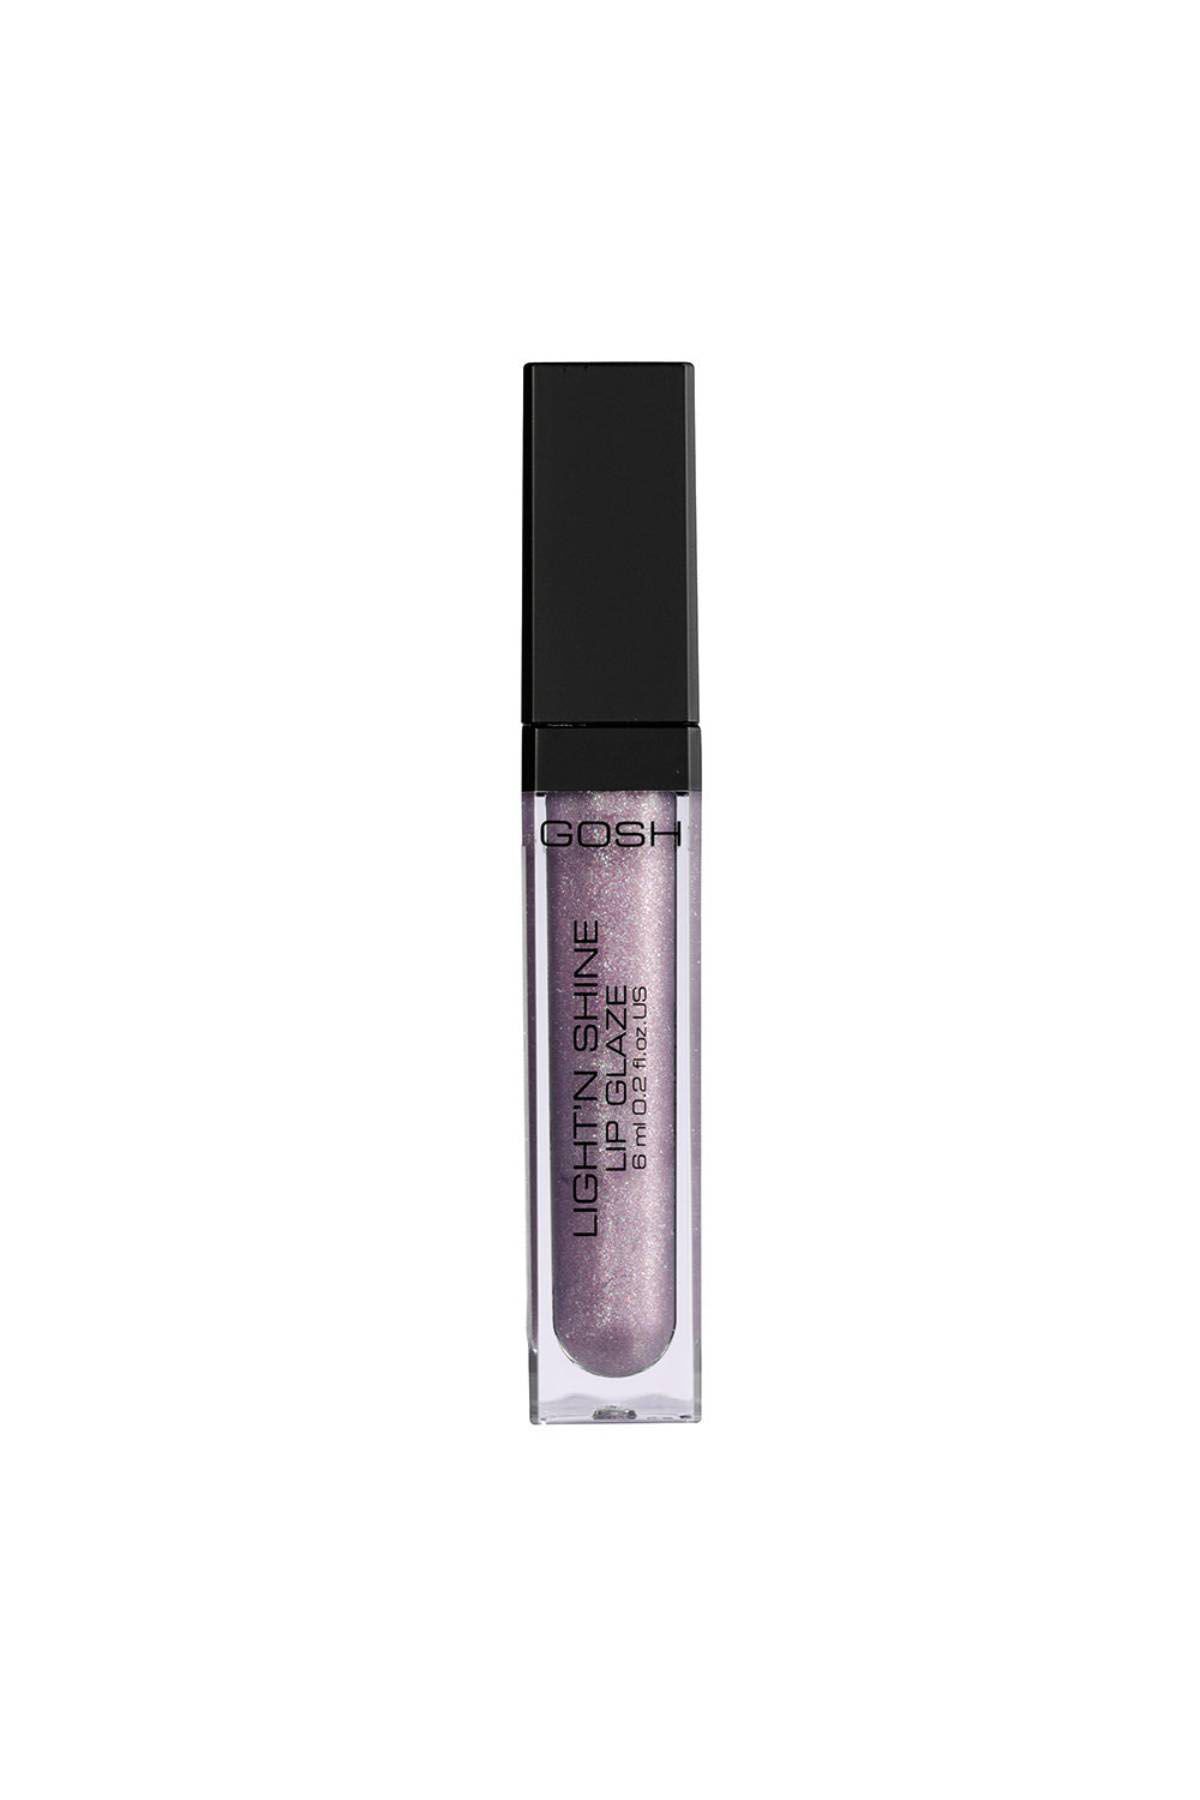 Gosh - Lightn Shine Lip Glaze - 07 Light Purple